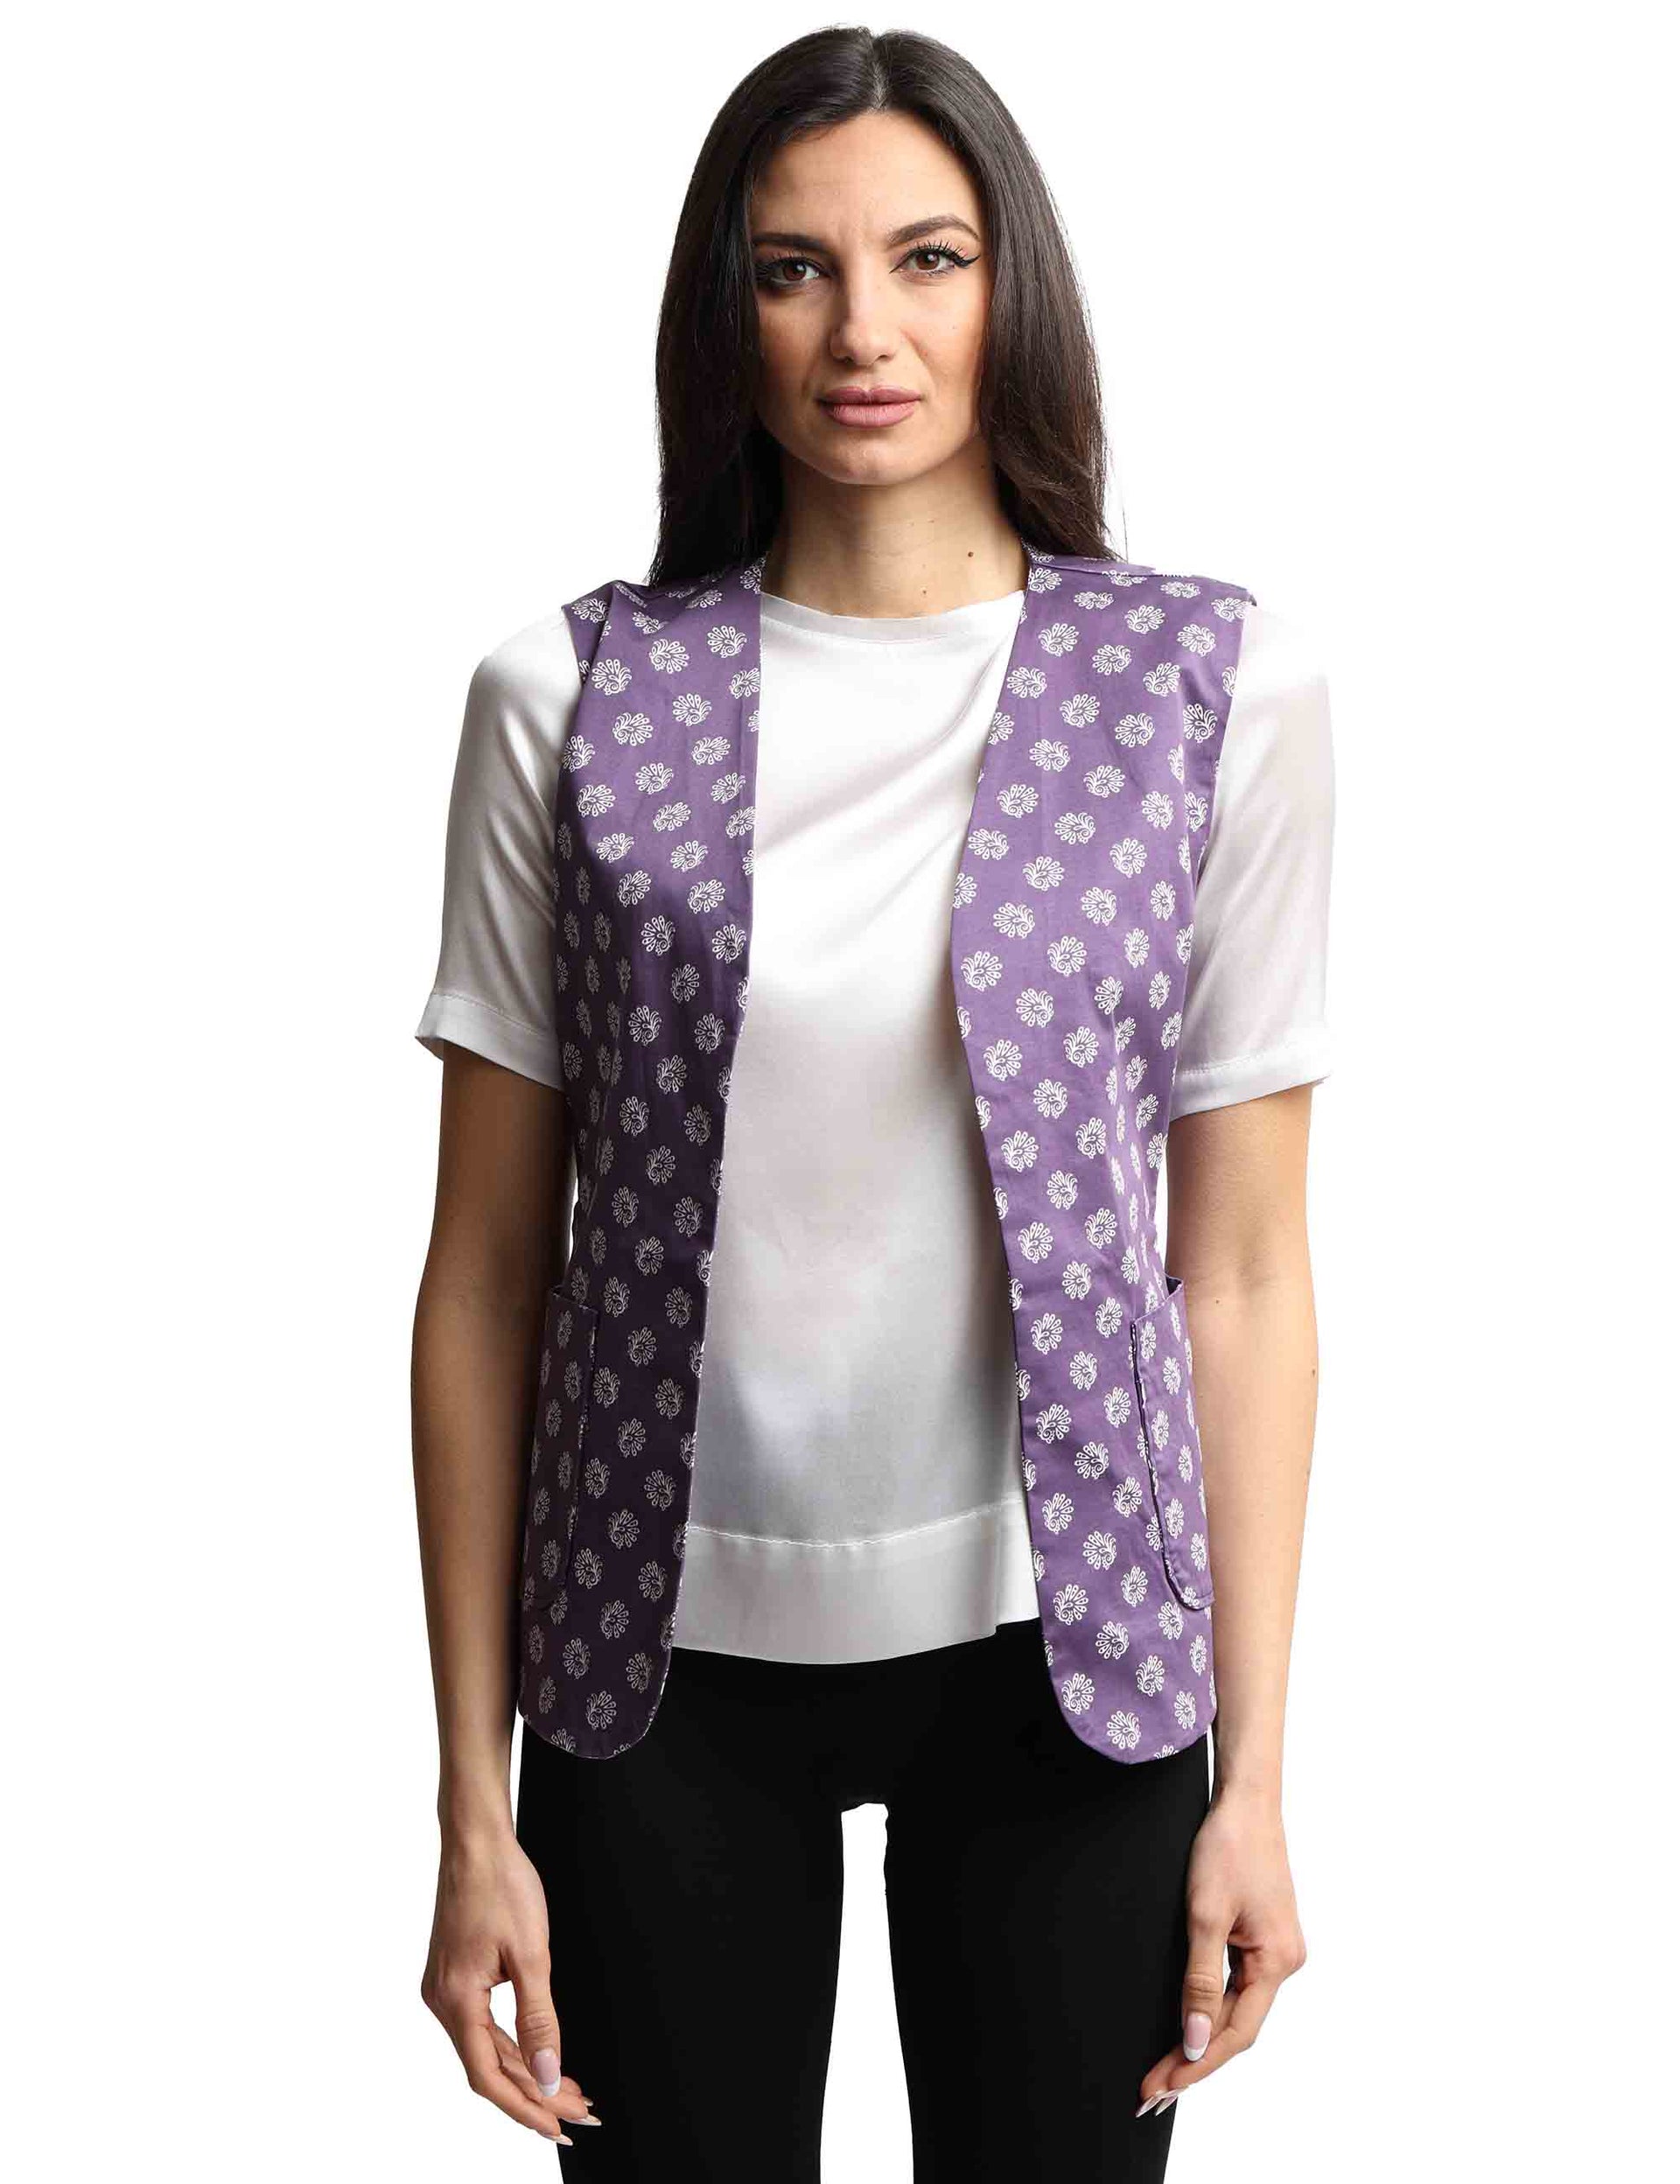 Decorated purple cotton women's vest